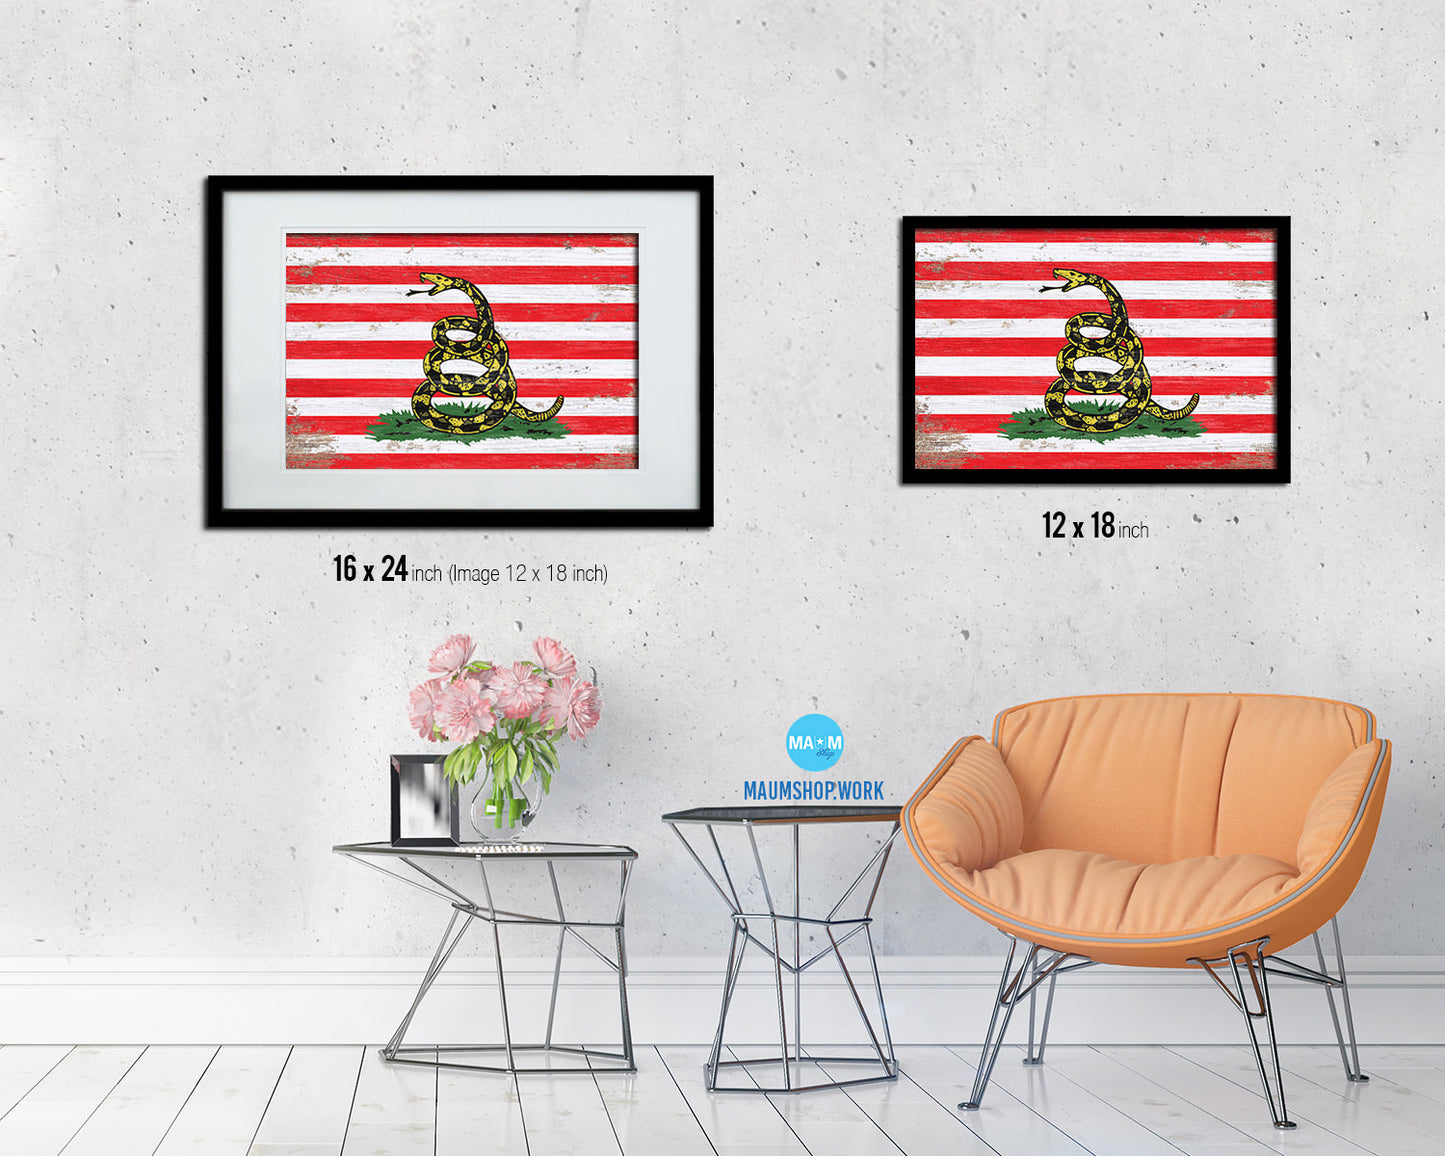 Revolution Split up New Sprint Shabby Chic Military Flag Framed Print Decor Wall Art Gifts